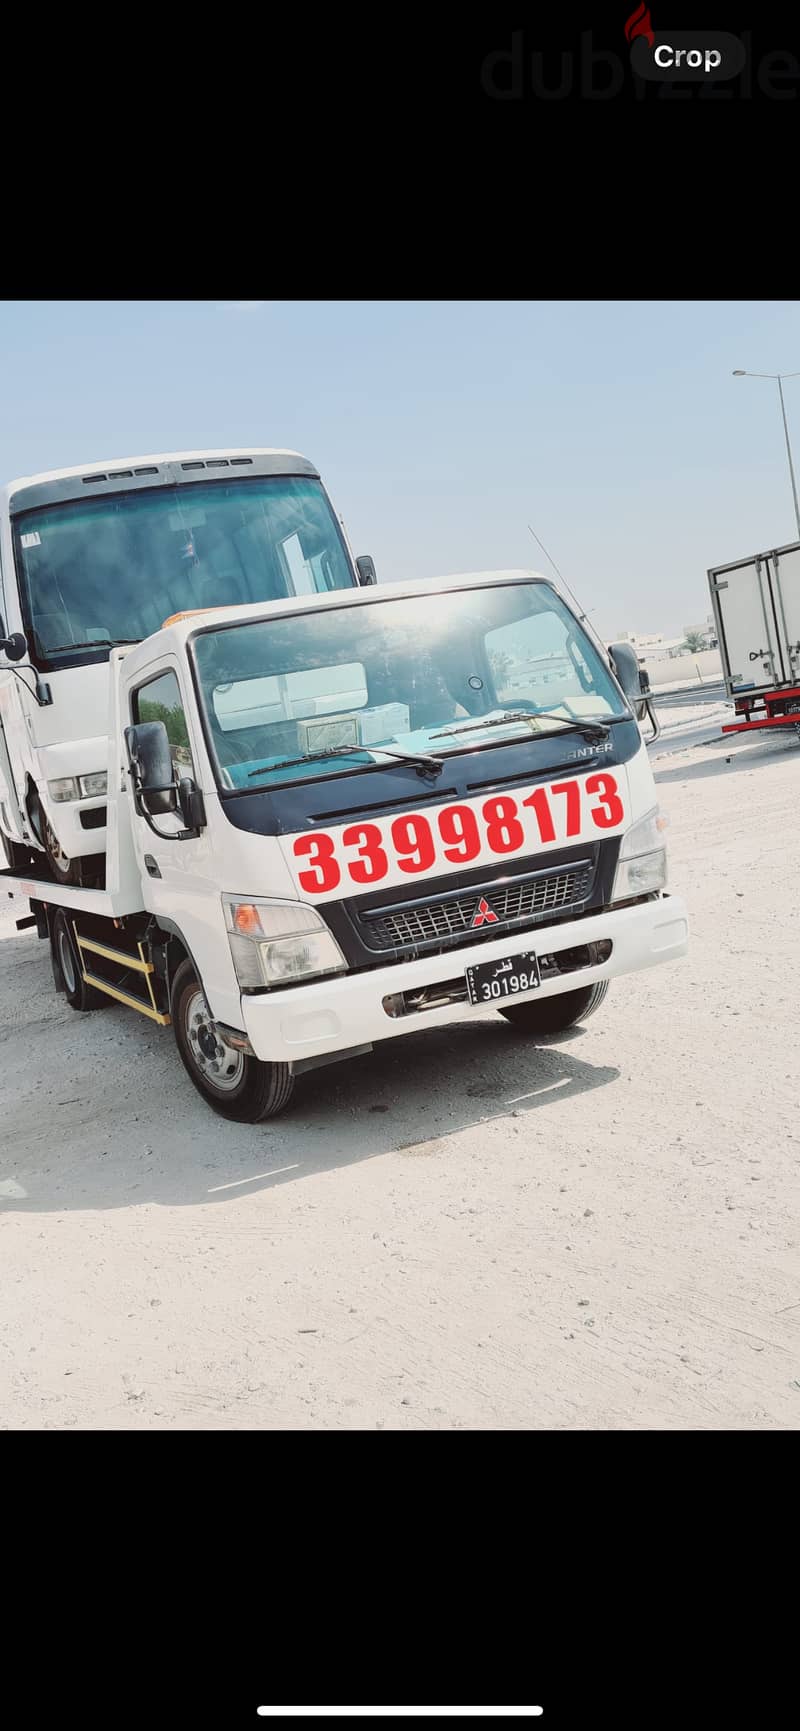 Breakdown#Recovery#Pearl Qatar 33998173#Tow Truck#Pearl Qatar 33998173 0